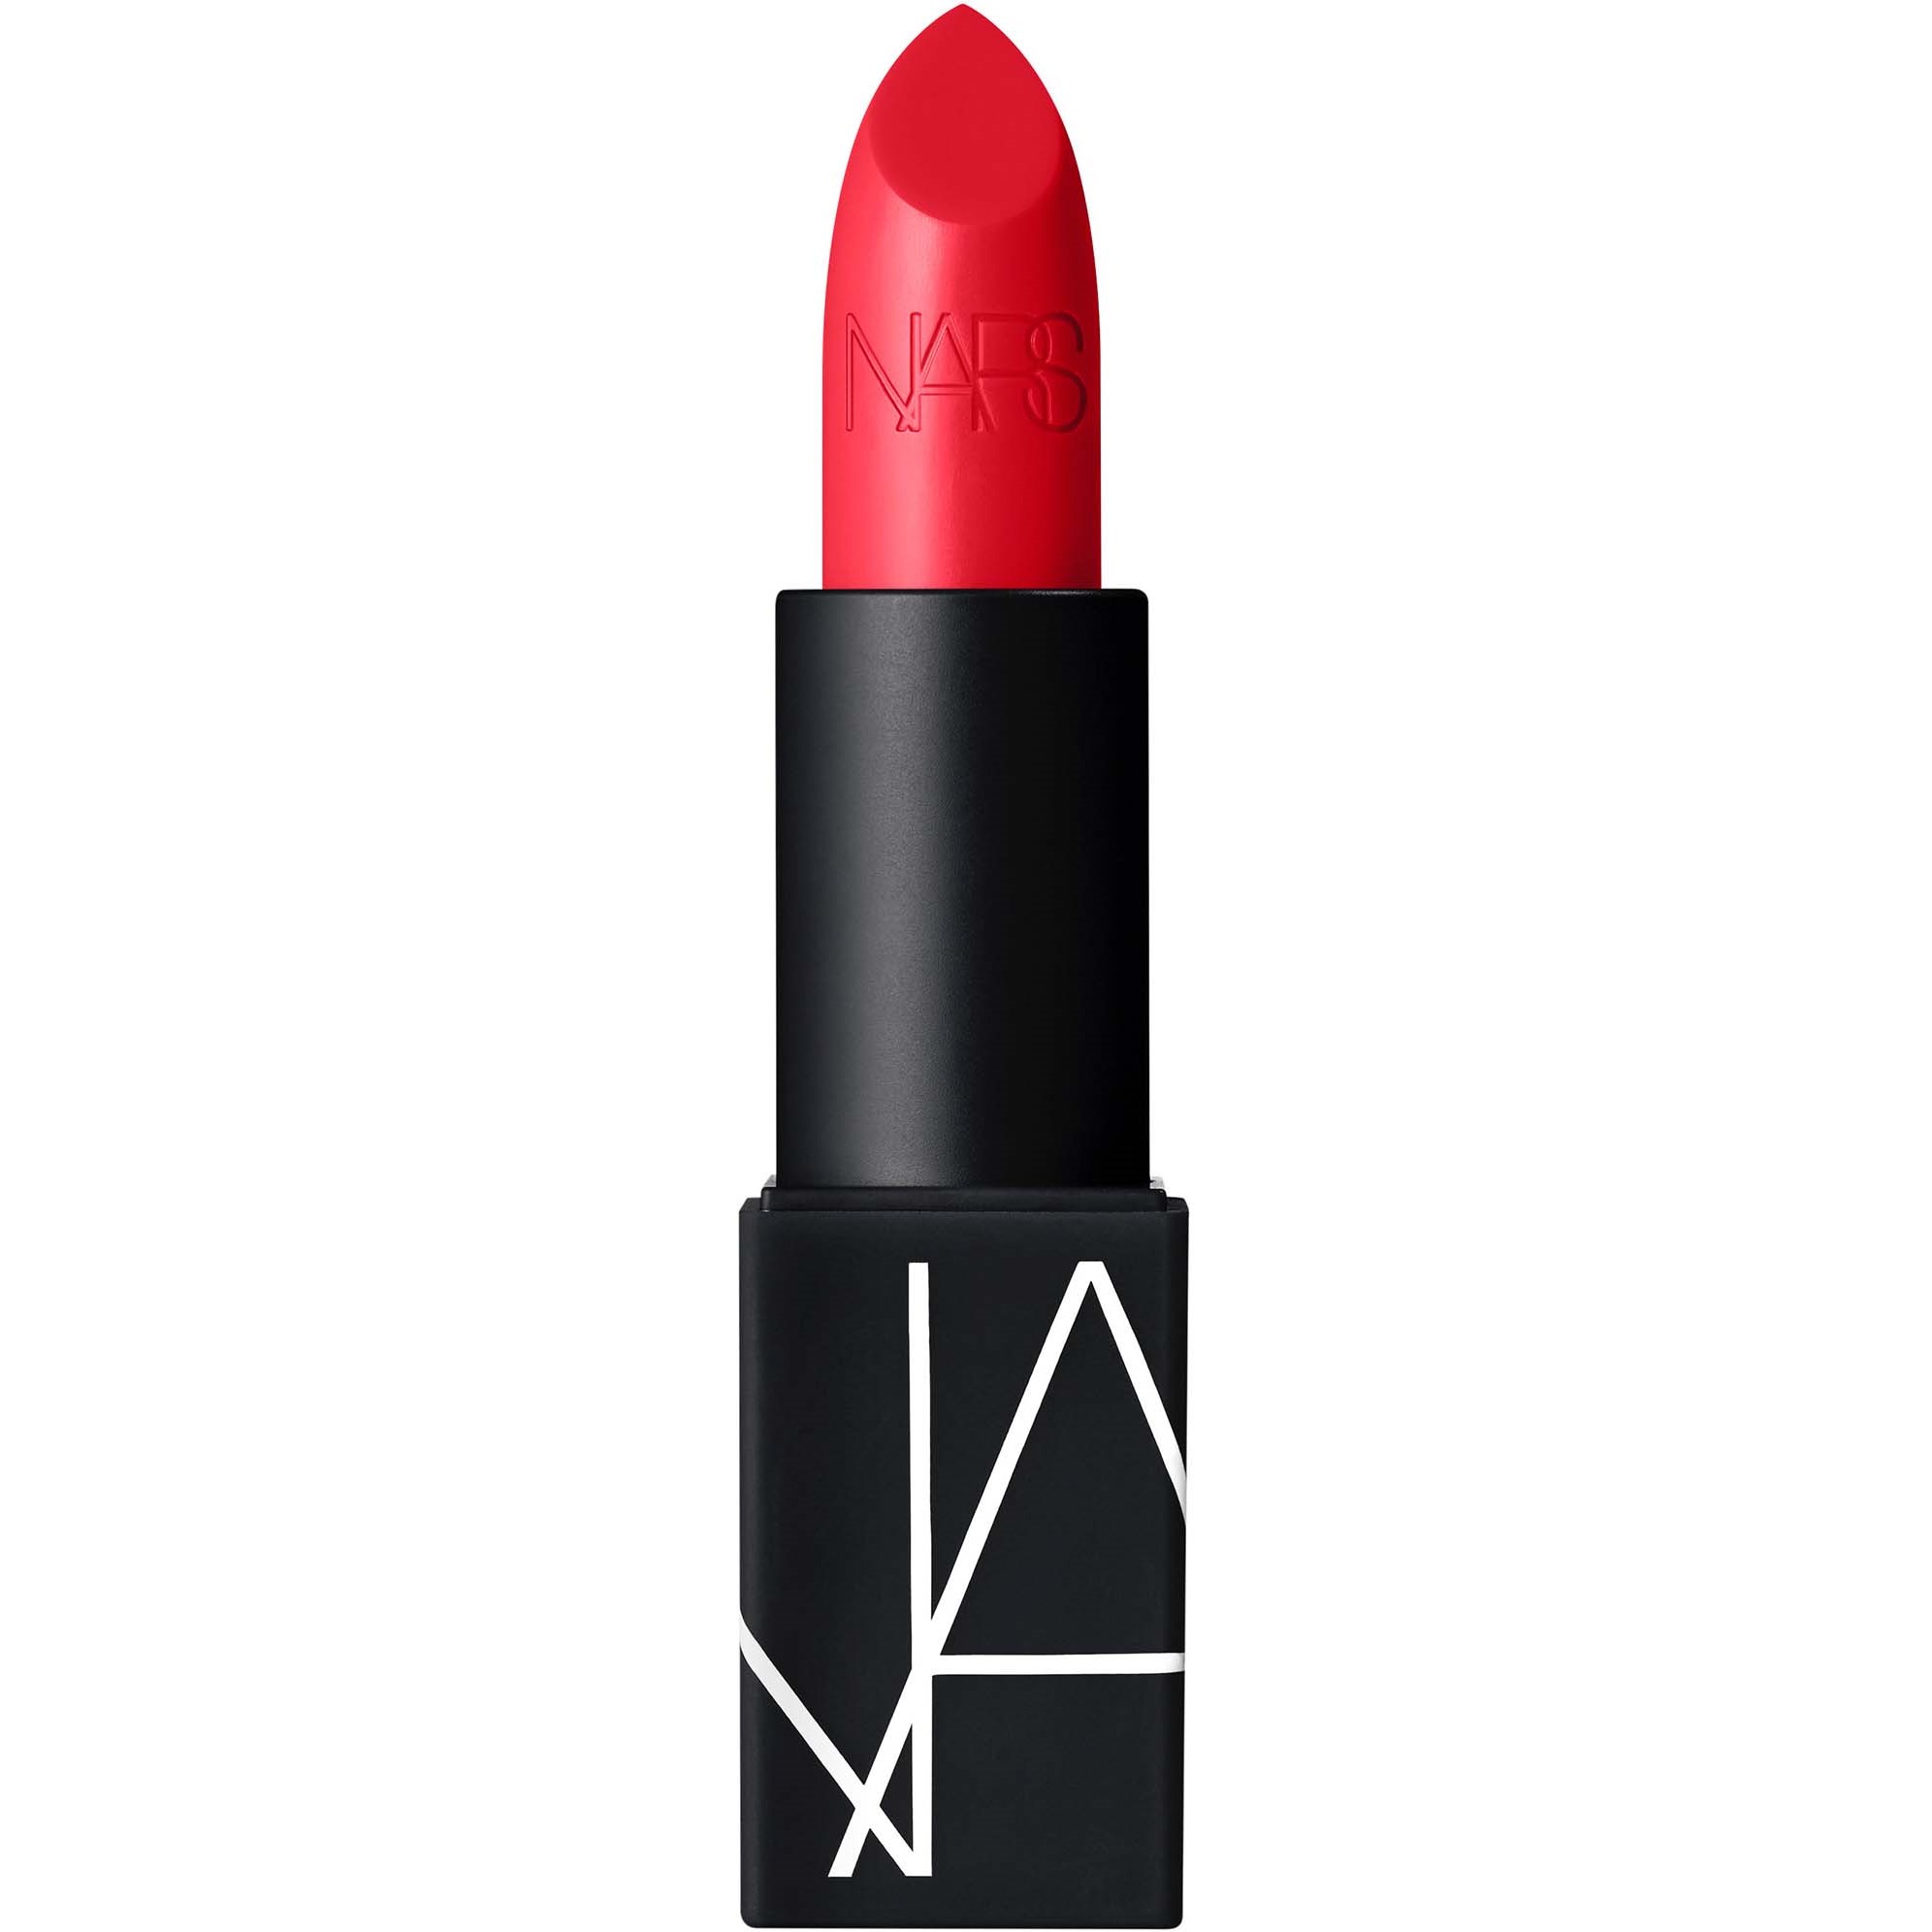 Bilde av Nars Lipstick Matte Ravishing Red